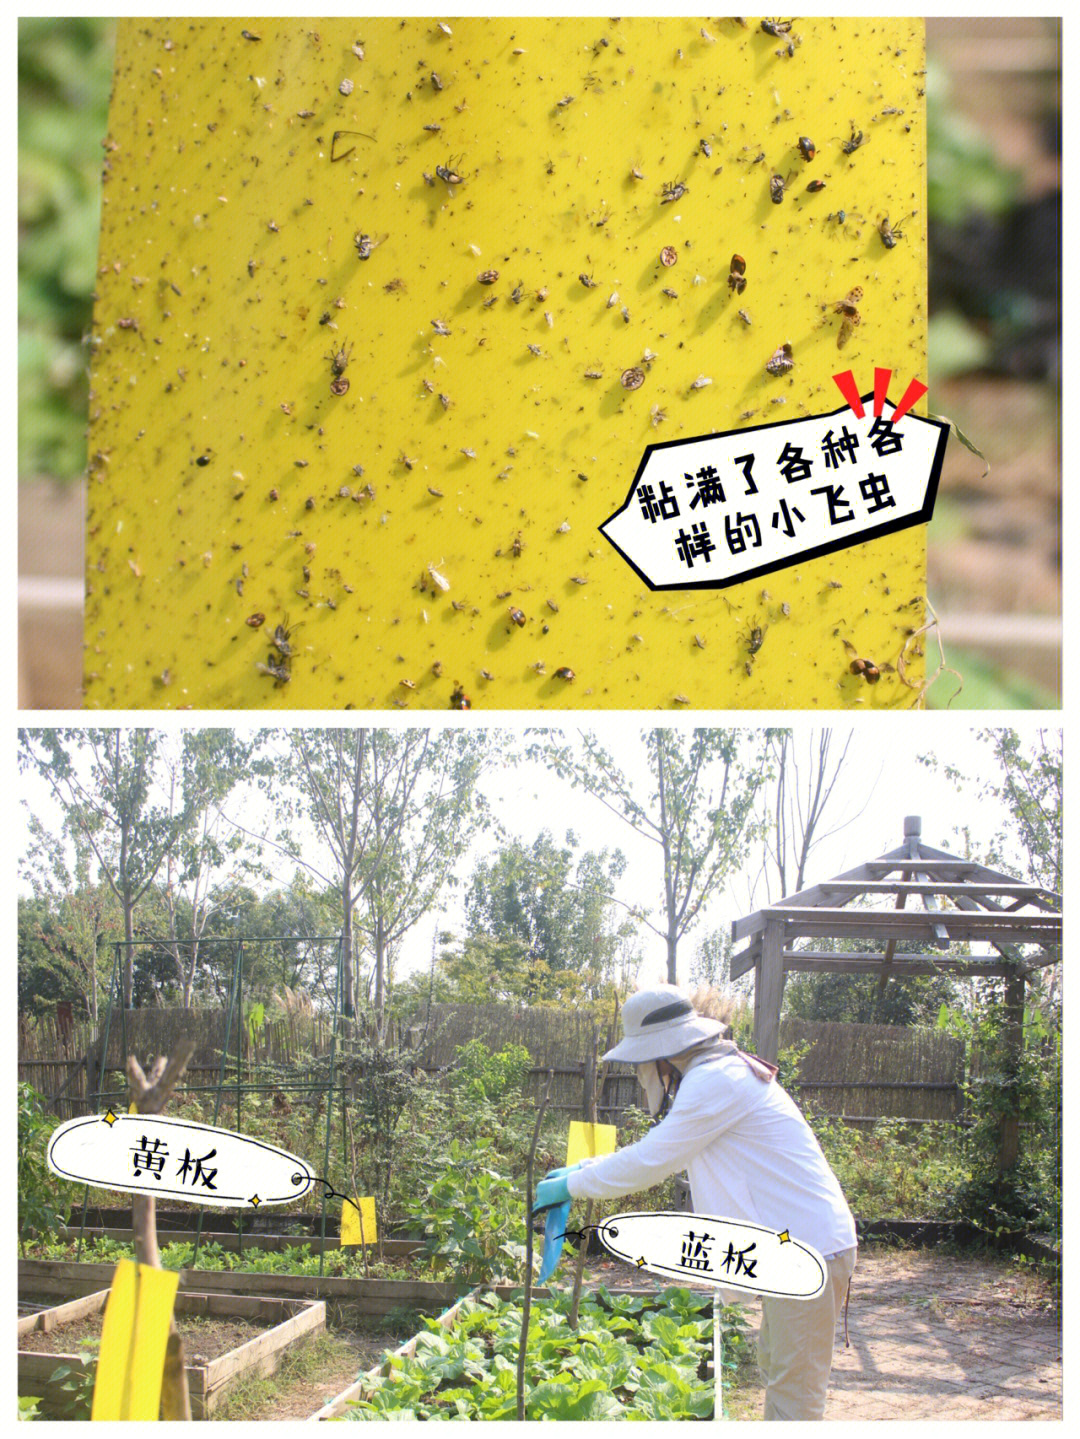 黄板和蓝板是有不同用处的:【黄色板】利用虫子的驱光性,可诱杀烟粉虱